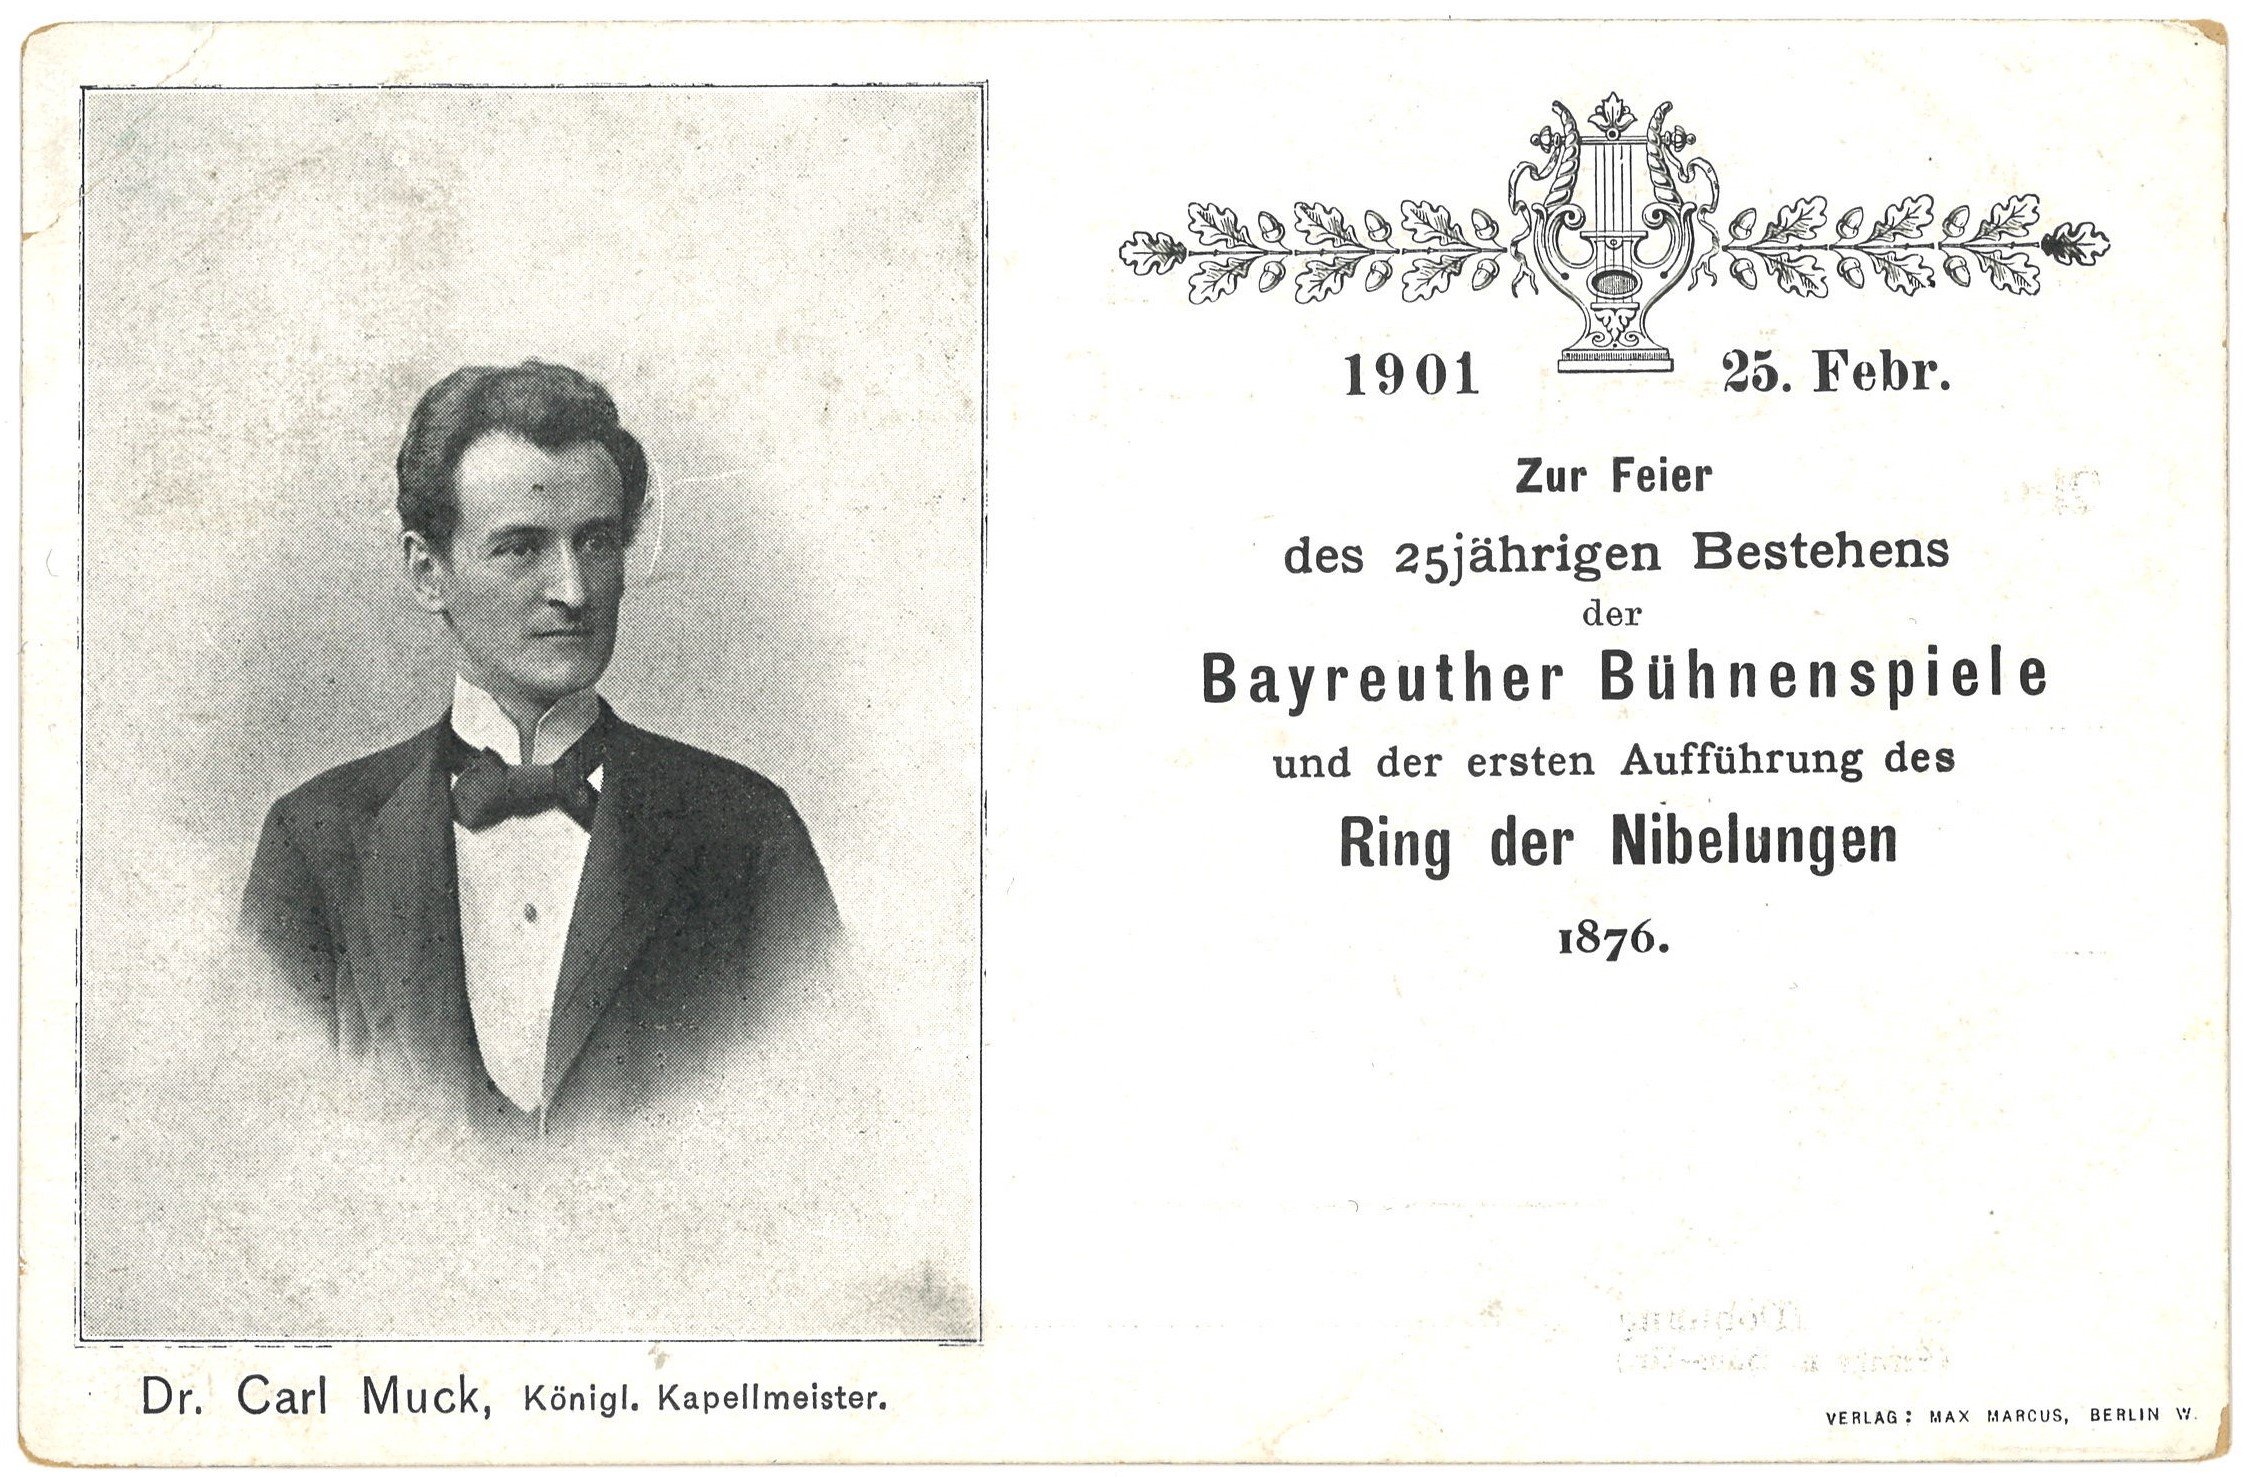 Muck, Carl (1859-1940), Dirigent (Landesgeschichtliche Vereinigung für die Mark Brandenburg e.V. CC BY)